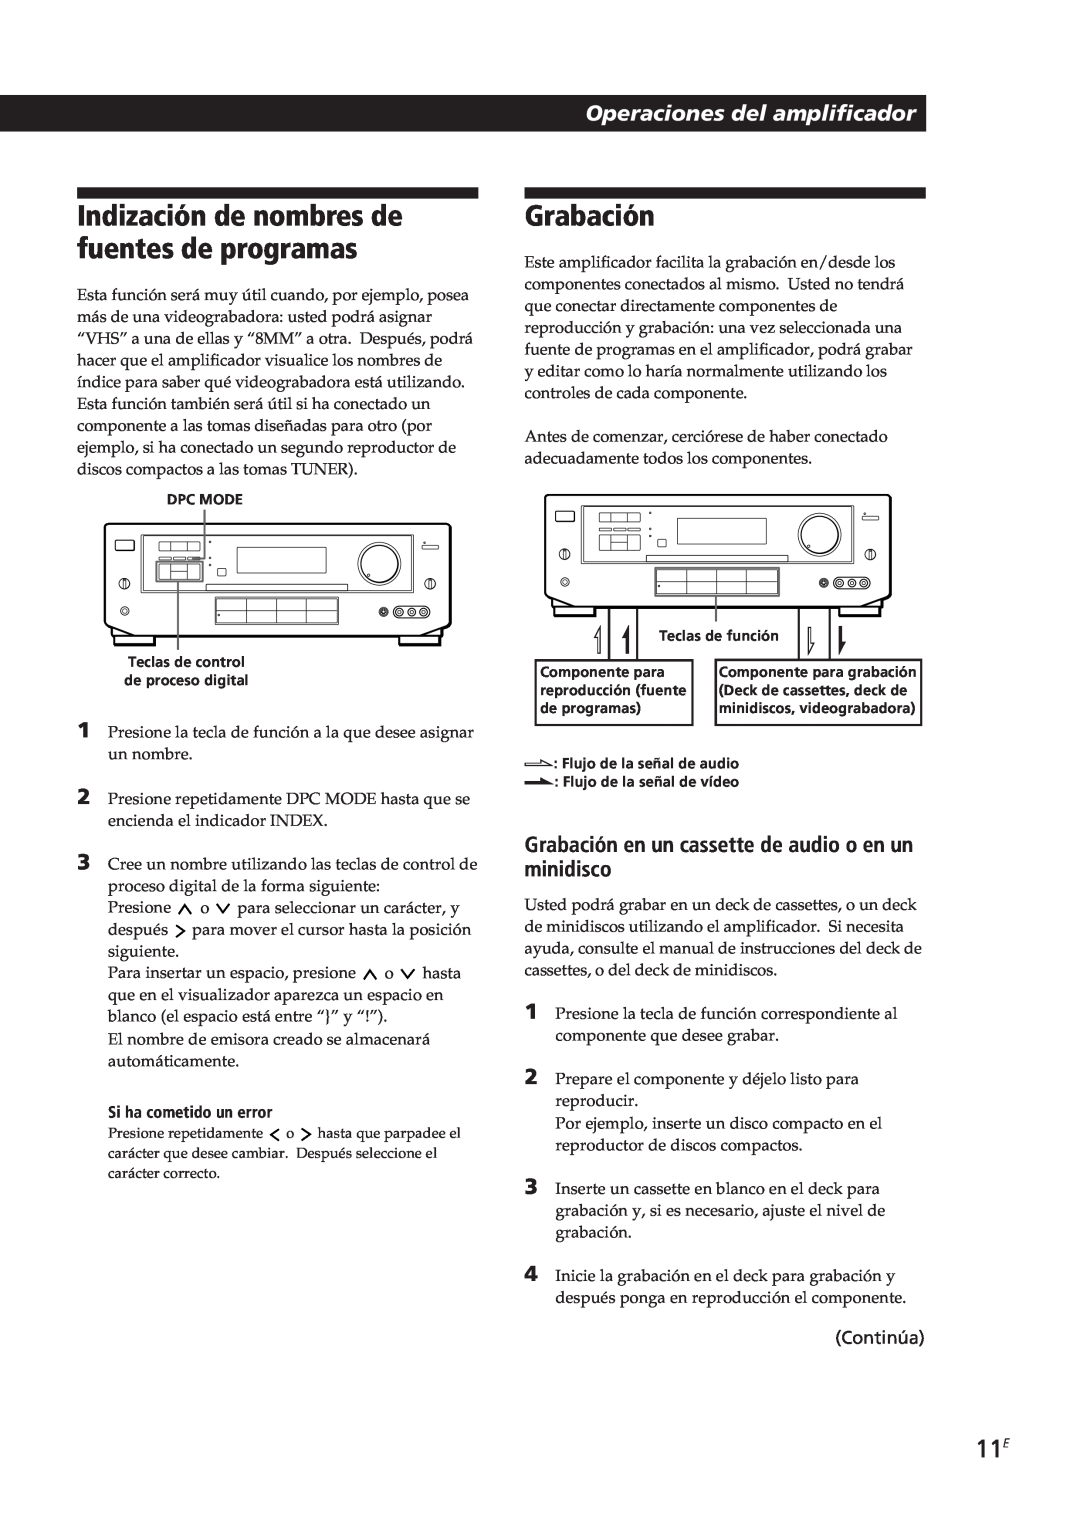 Sony TA-VE700 manual Grabación, Indización de nombres de fuentes de programas, Operaciones del amplificador, Continúa 